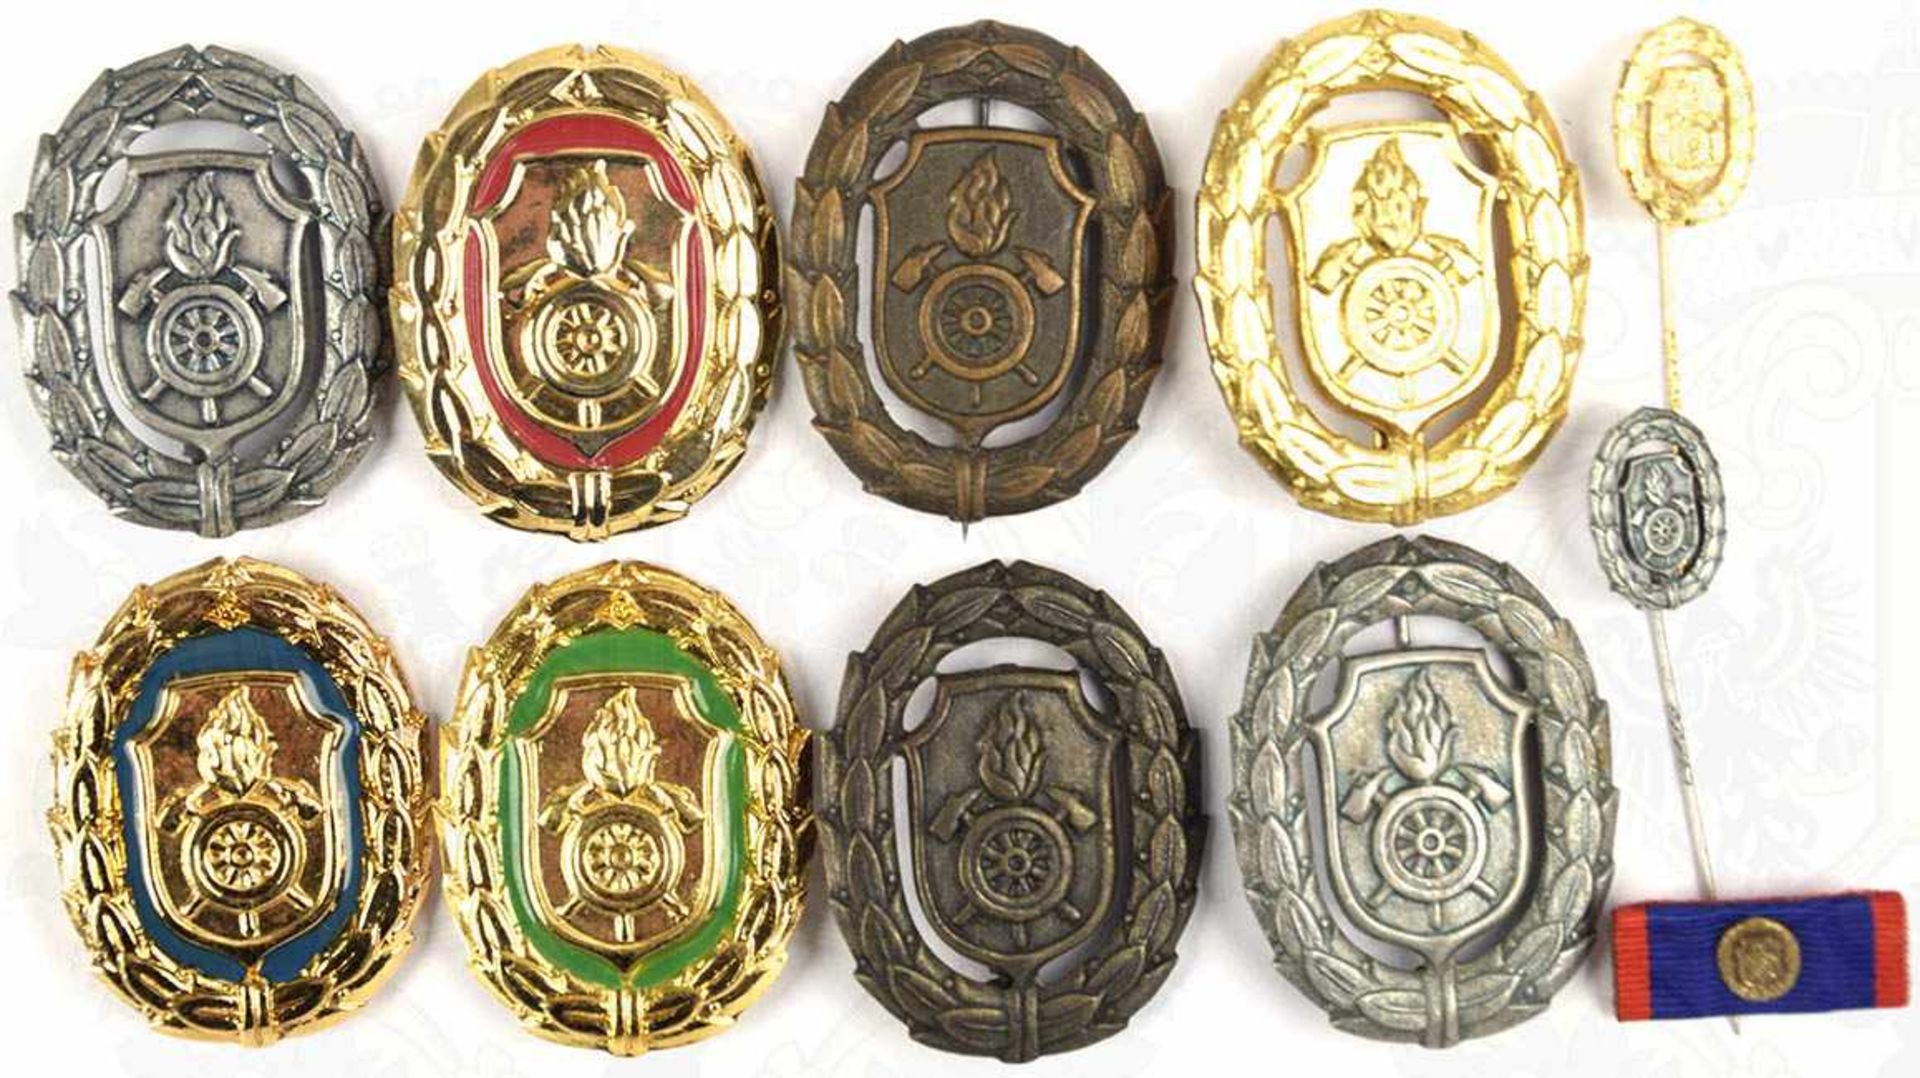 8 FEUERWEHR-LEISTUNGSABZEICHEN BAYERN, Bronze u. Silber, (je 2 St.), Gold, Gold/blau, Gold/grün u.